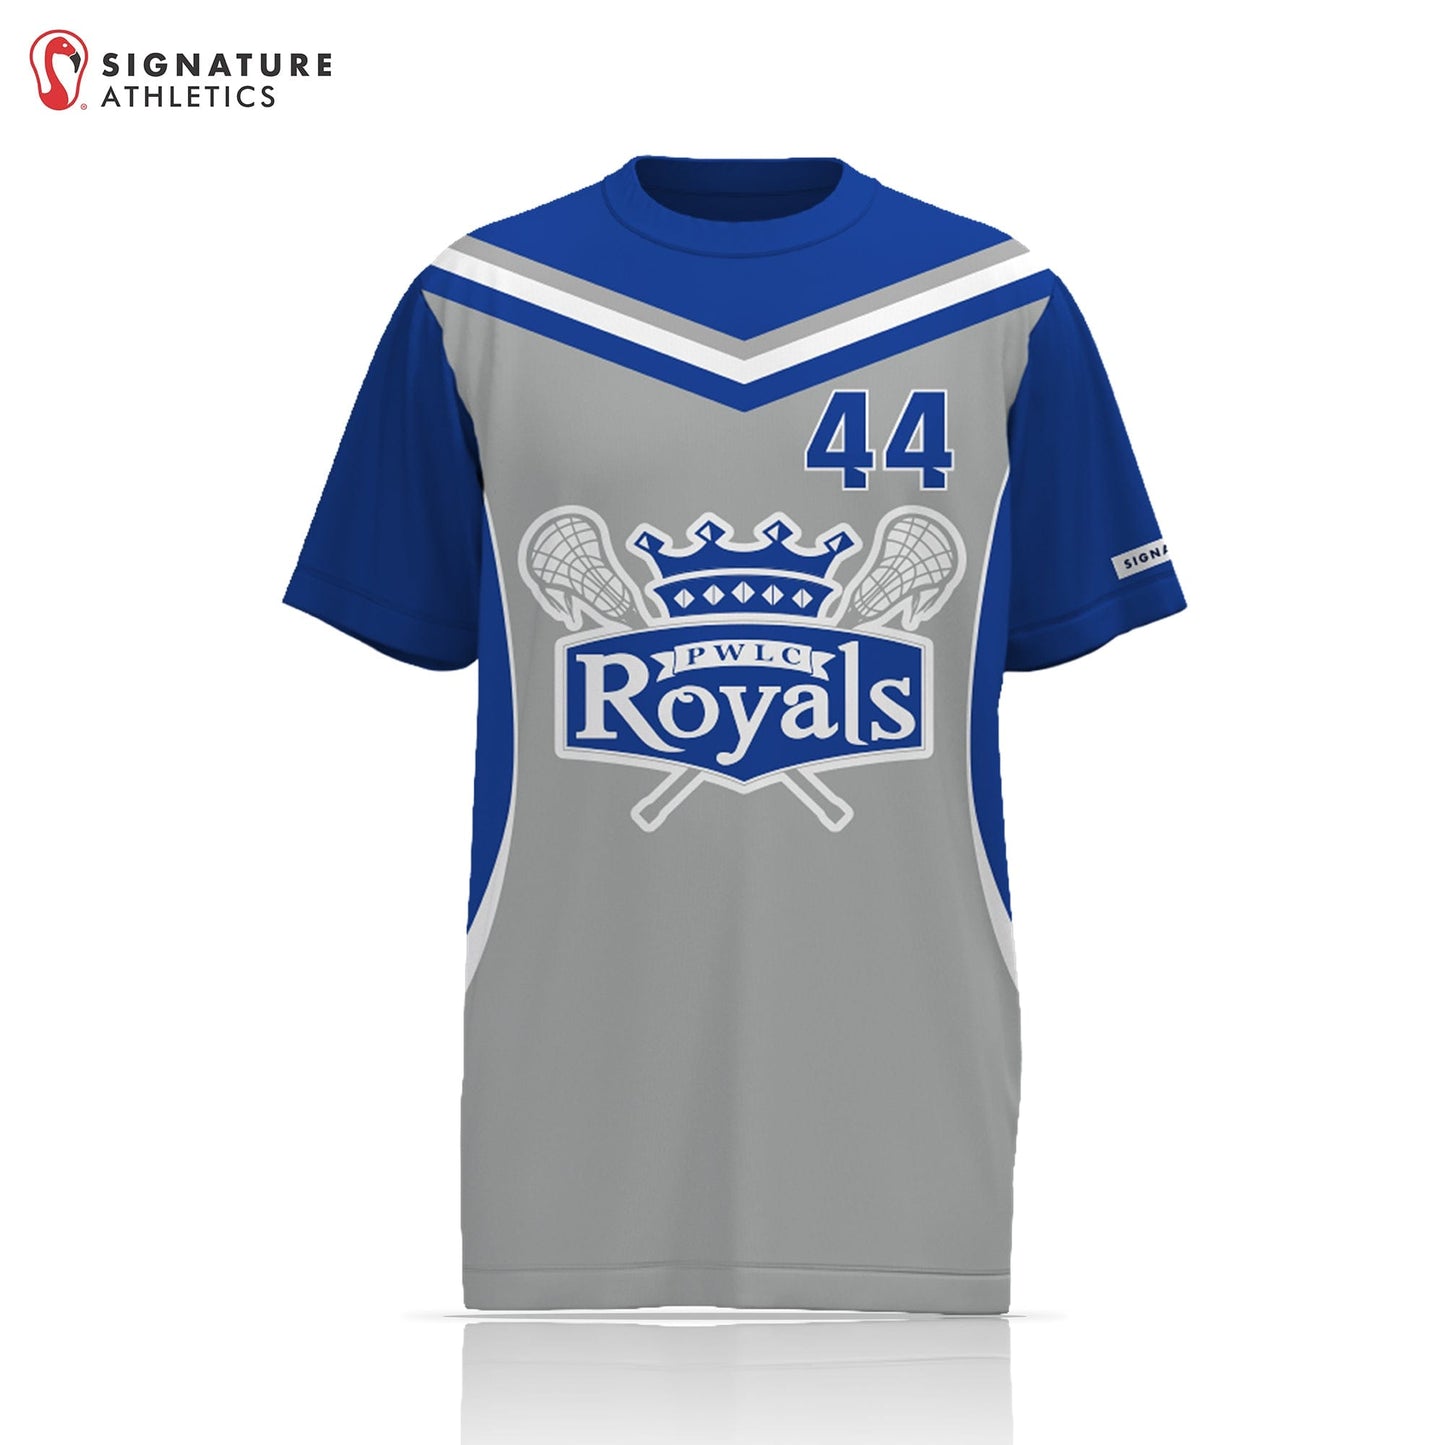 Prince William Lacrosse Club - Royals 2.0 Unisex Performance Short Sleeve Shooting Shirt - Basic 2.0:Girls 2029 Signature Lacrosse